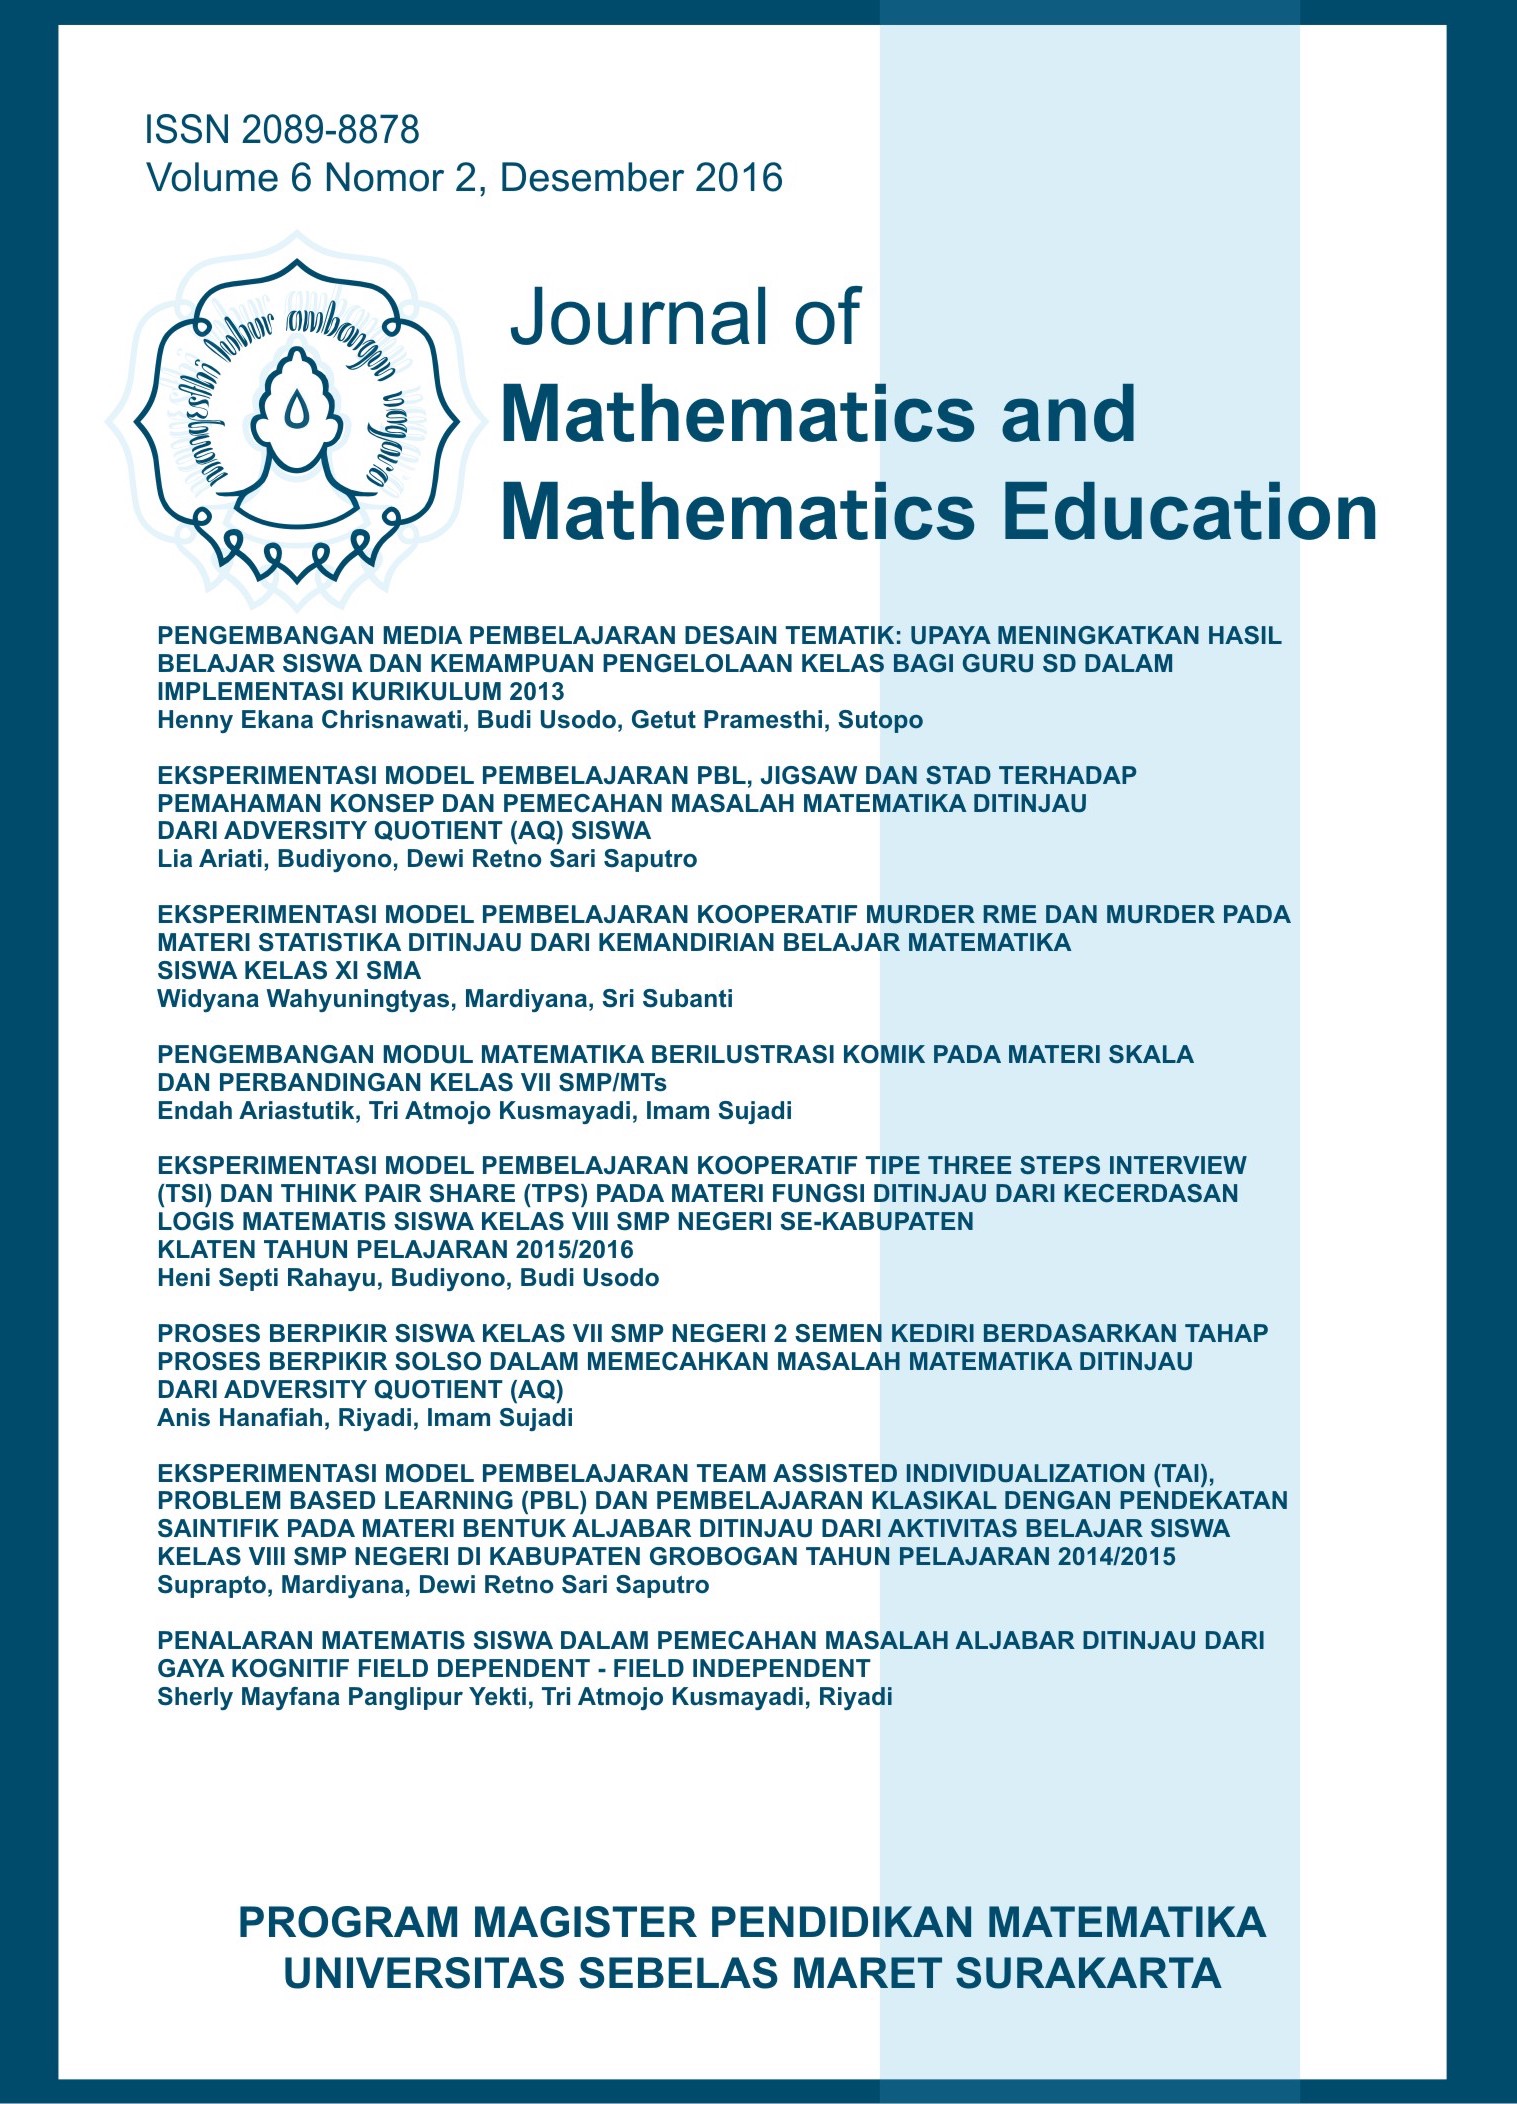 Journal of Mathematics and Mathematics Education